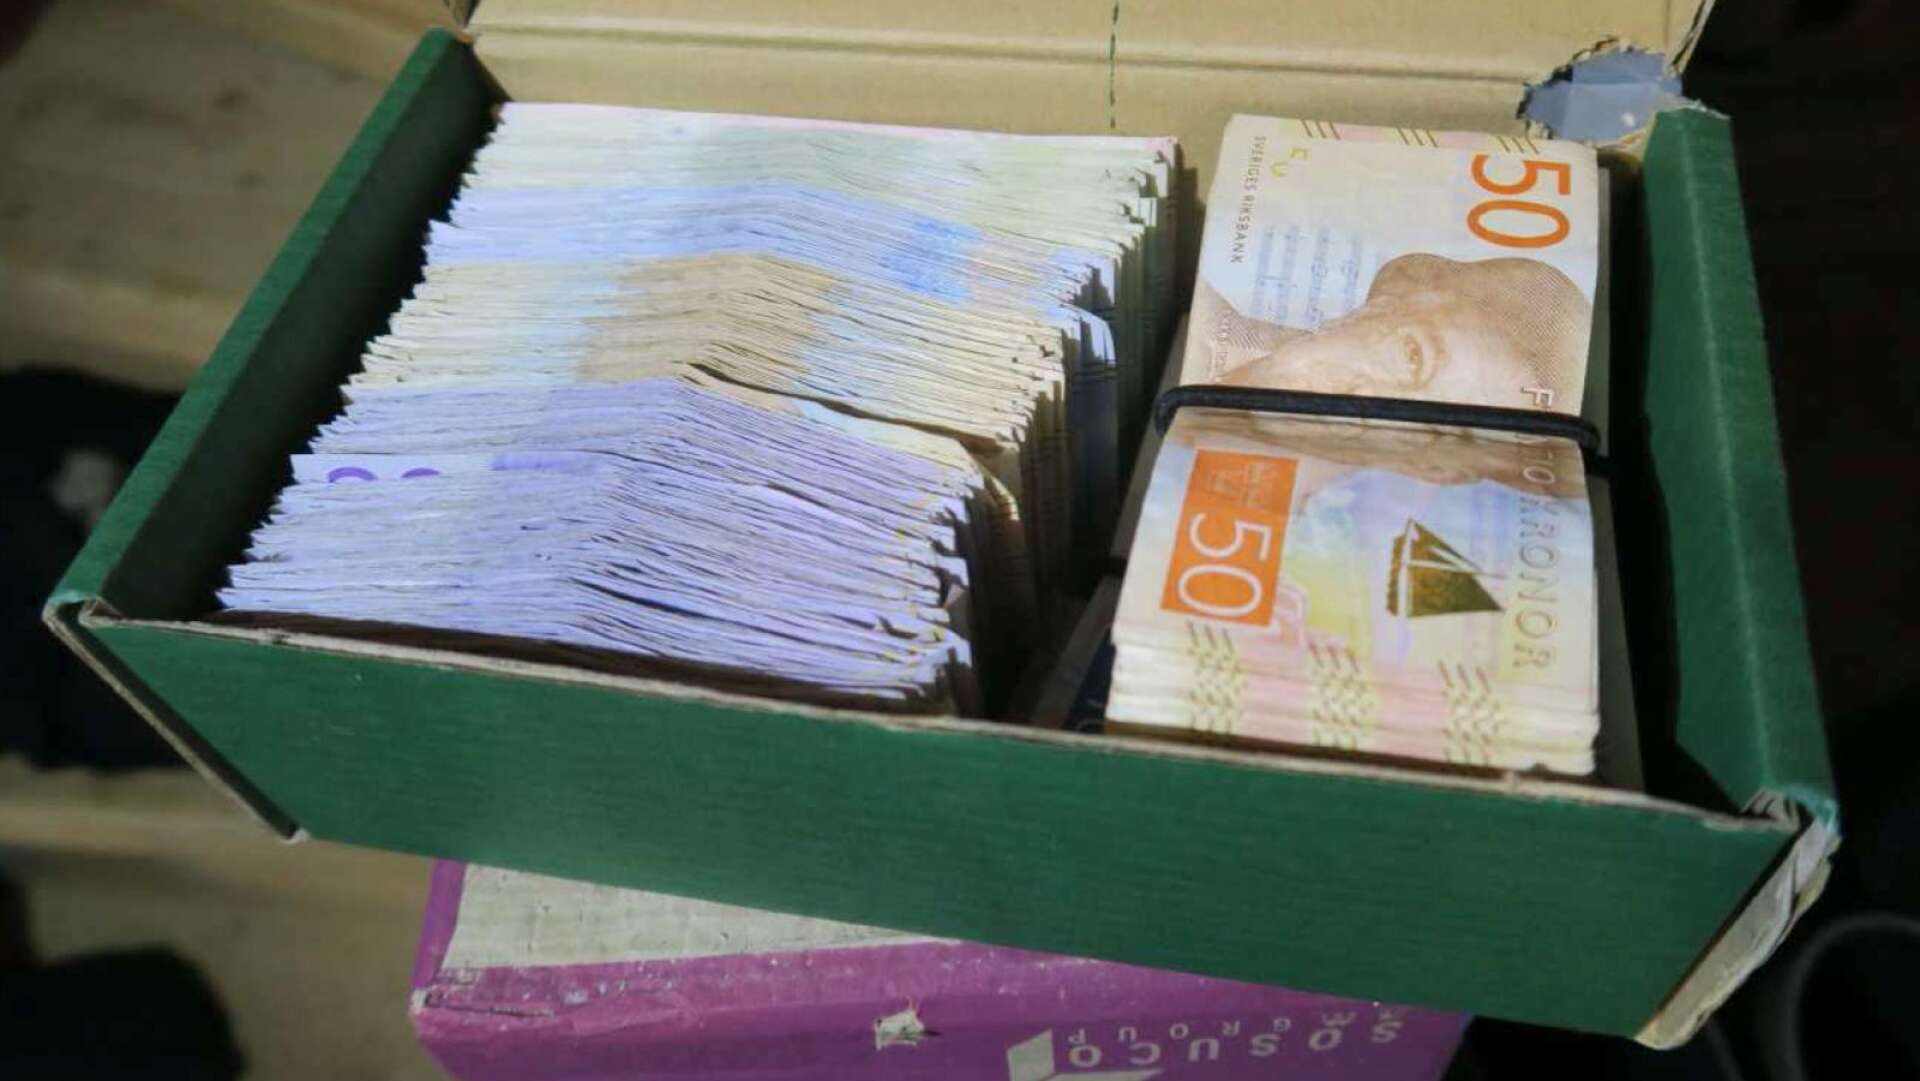 Vid husrannsakan hittade polisen 117 980 kronor. Mannen säger att pengarna kommer från olika försäljningar.